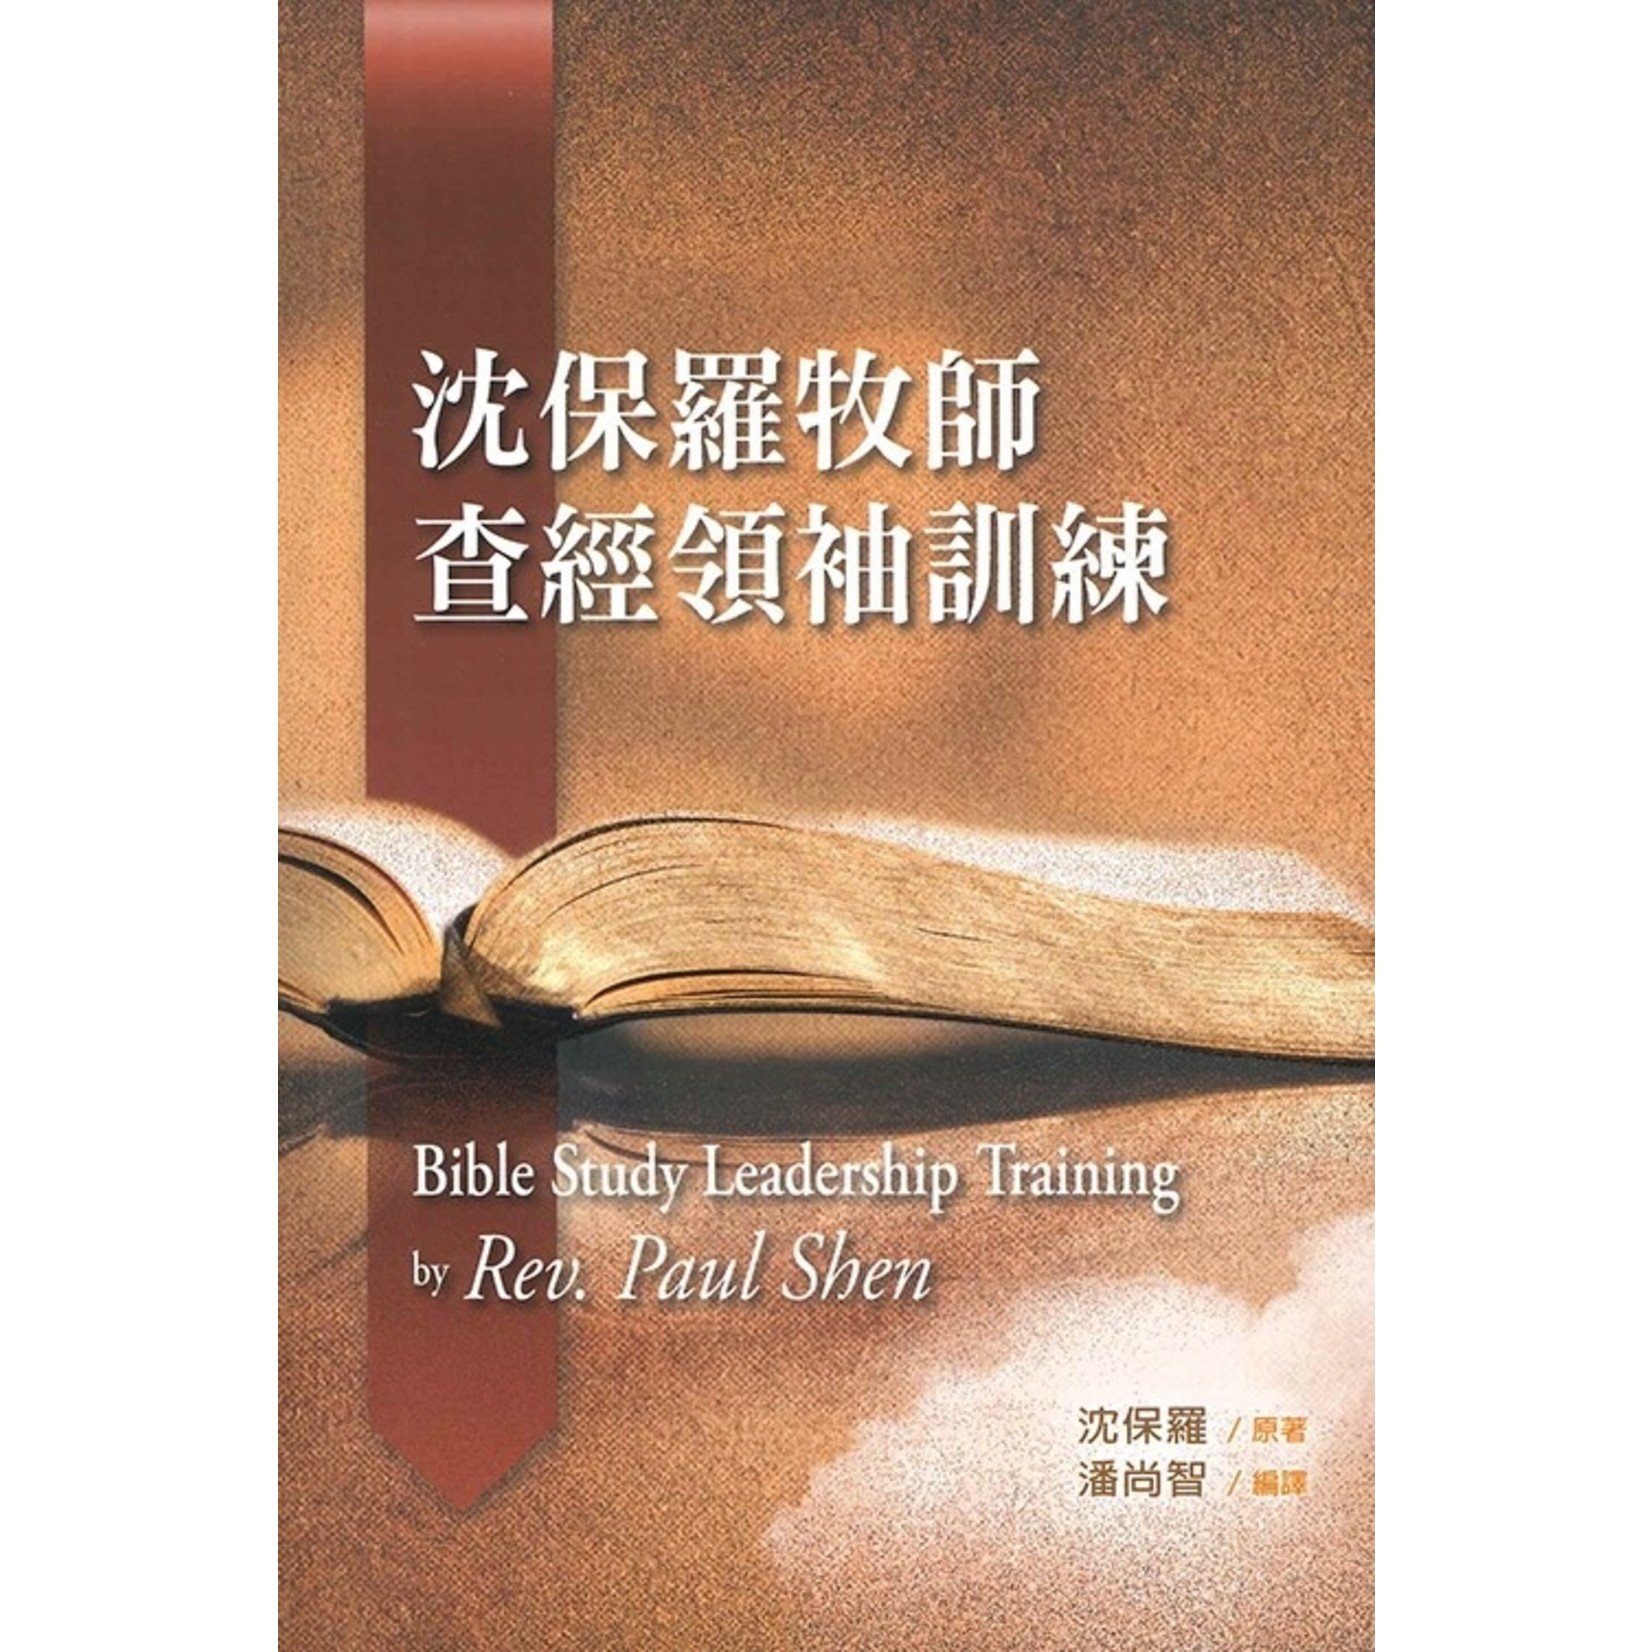 更新傳道會 Christian Renewal Ministries 沈保羅牧師查經領袖訓練 Bible Study Leadership Training by Rev. Paul Shen